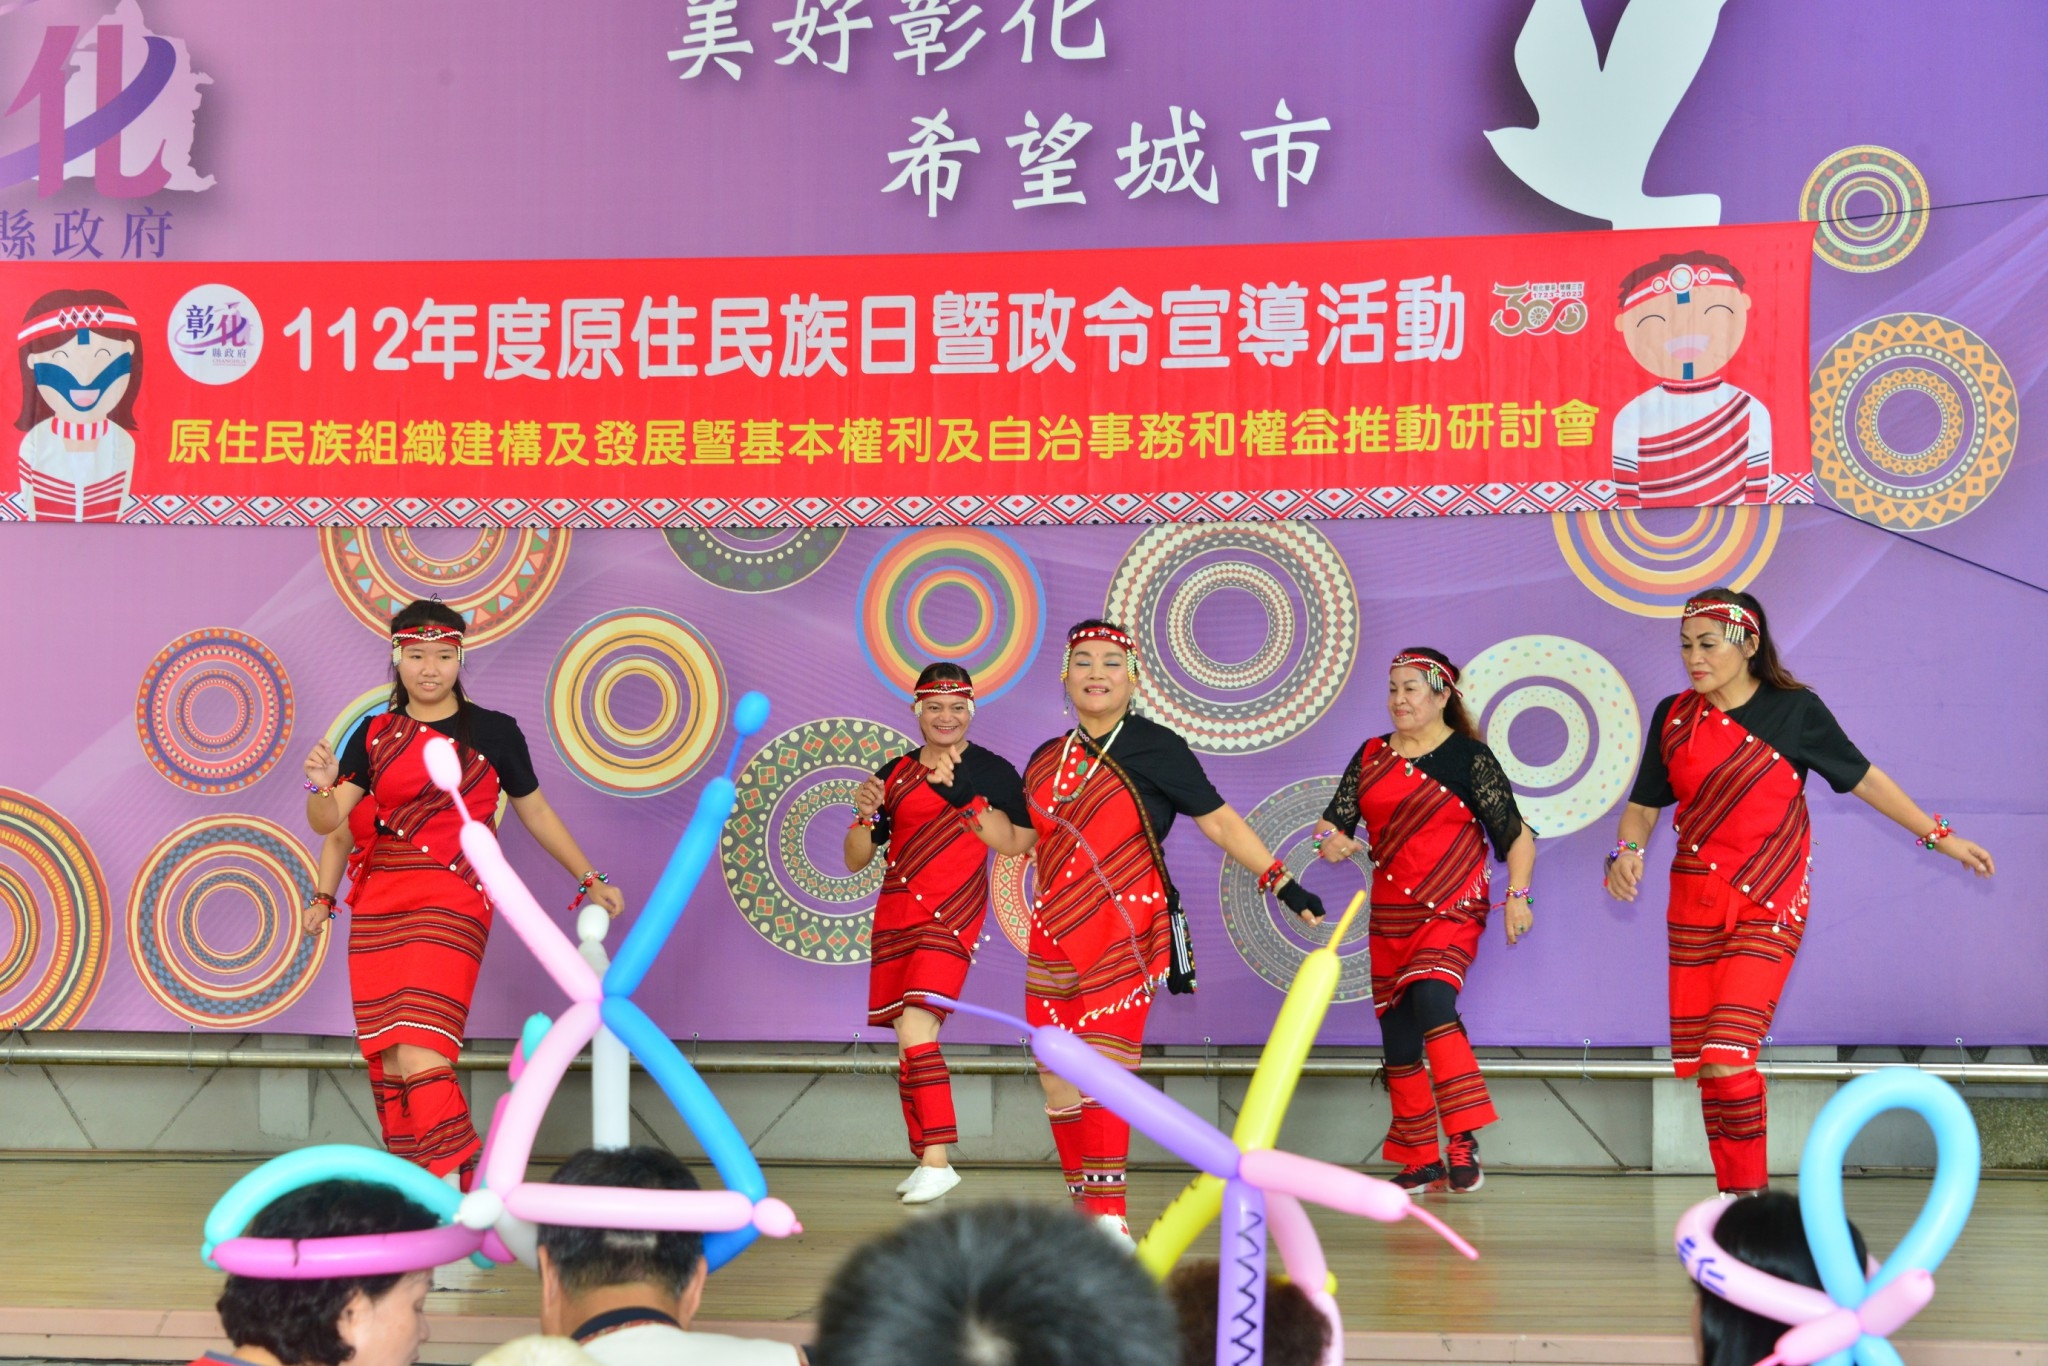 傳統舞蹈表演